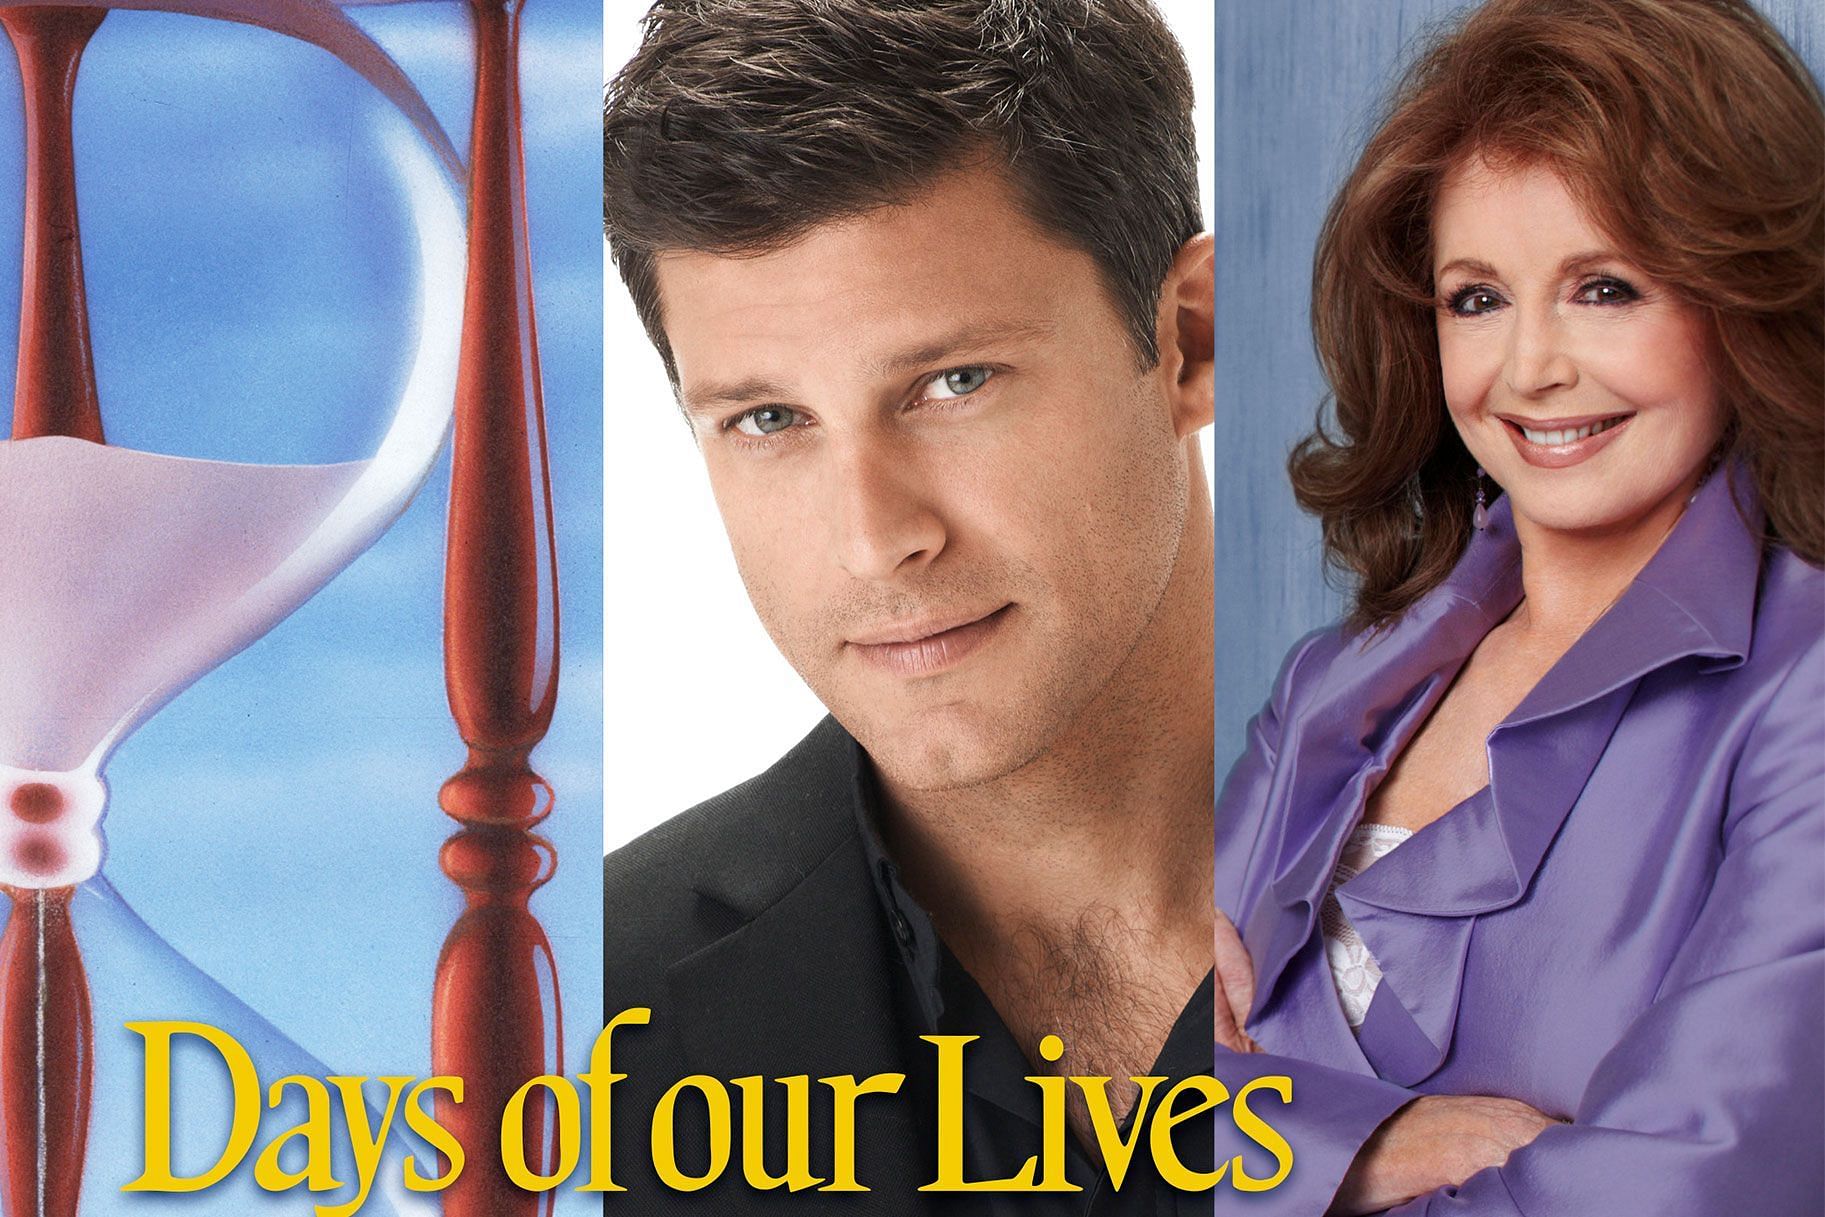 Days of Our Lives Cast (Image via NBC)